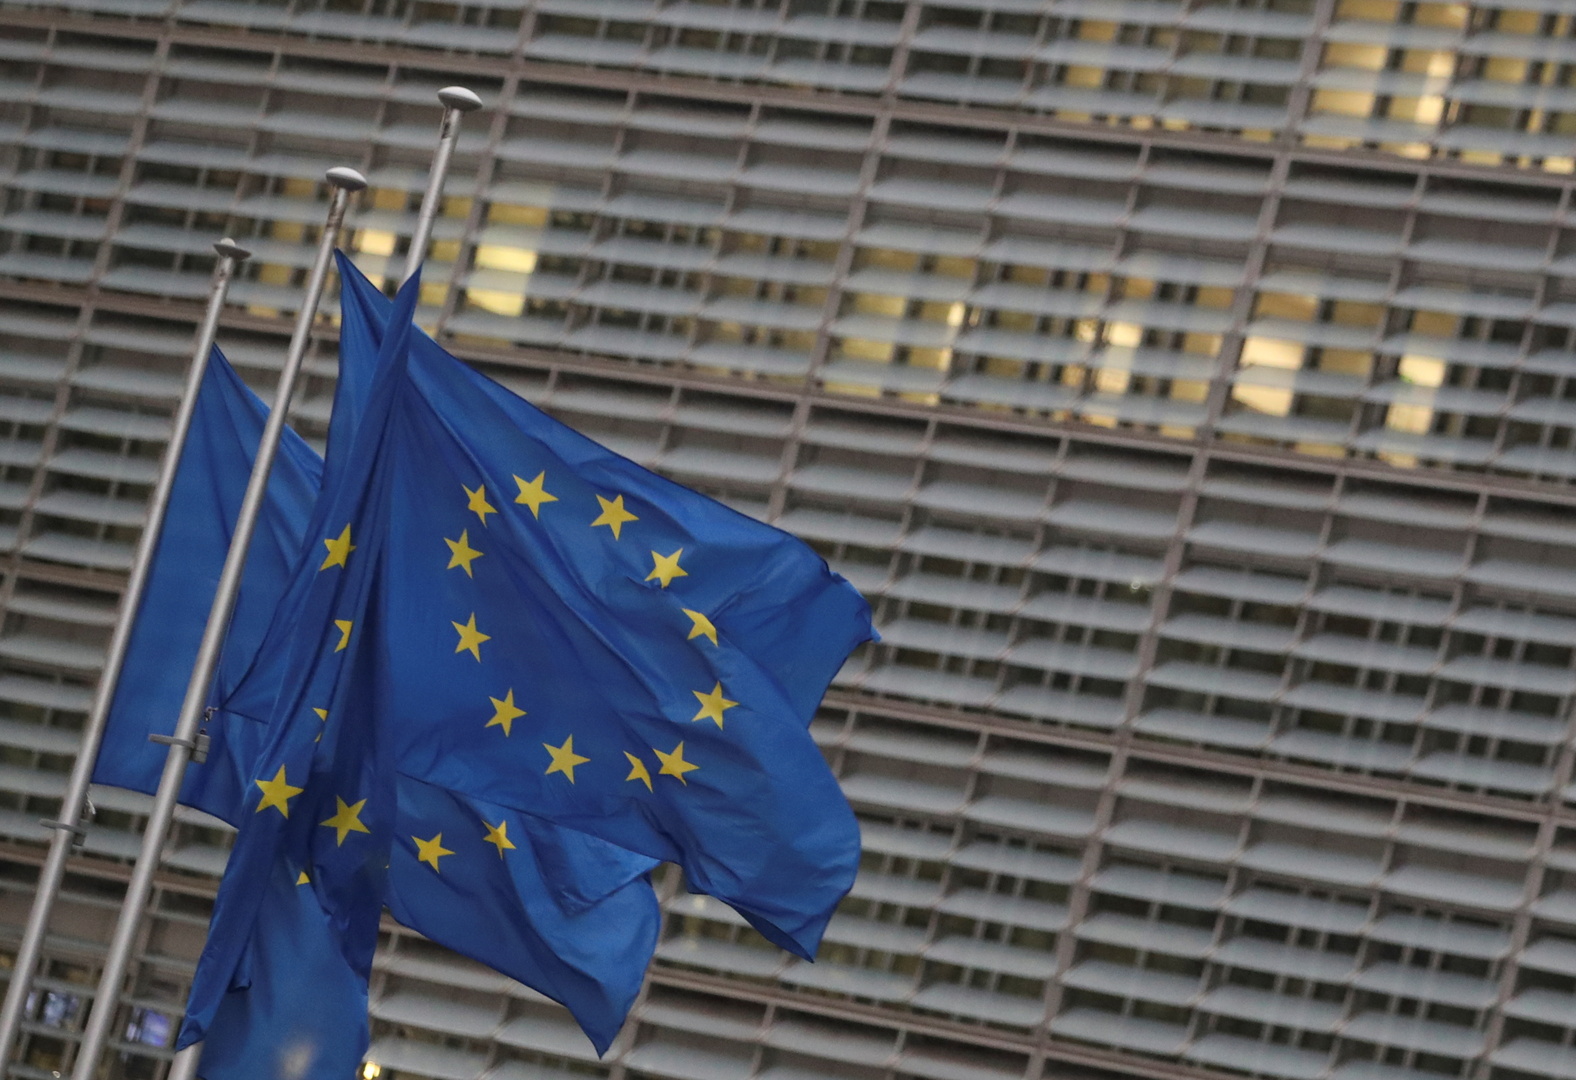 الاتحاد الأوروبي يبدأ يوم الإثنين إجراءات التوقيع على اتفاق ما بعد 